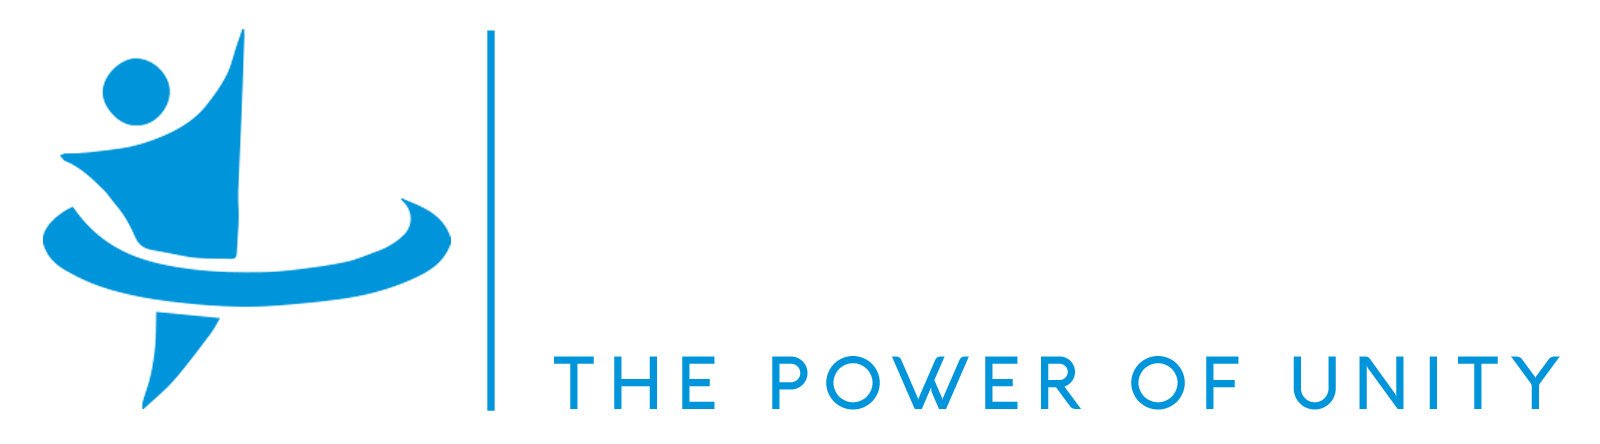 Abaluhya Networking Group